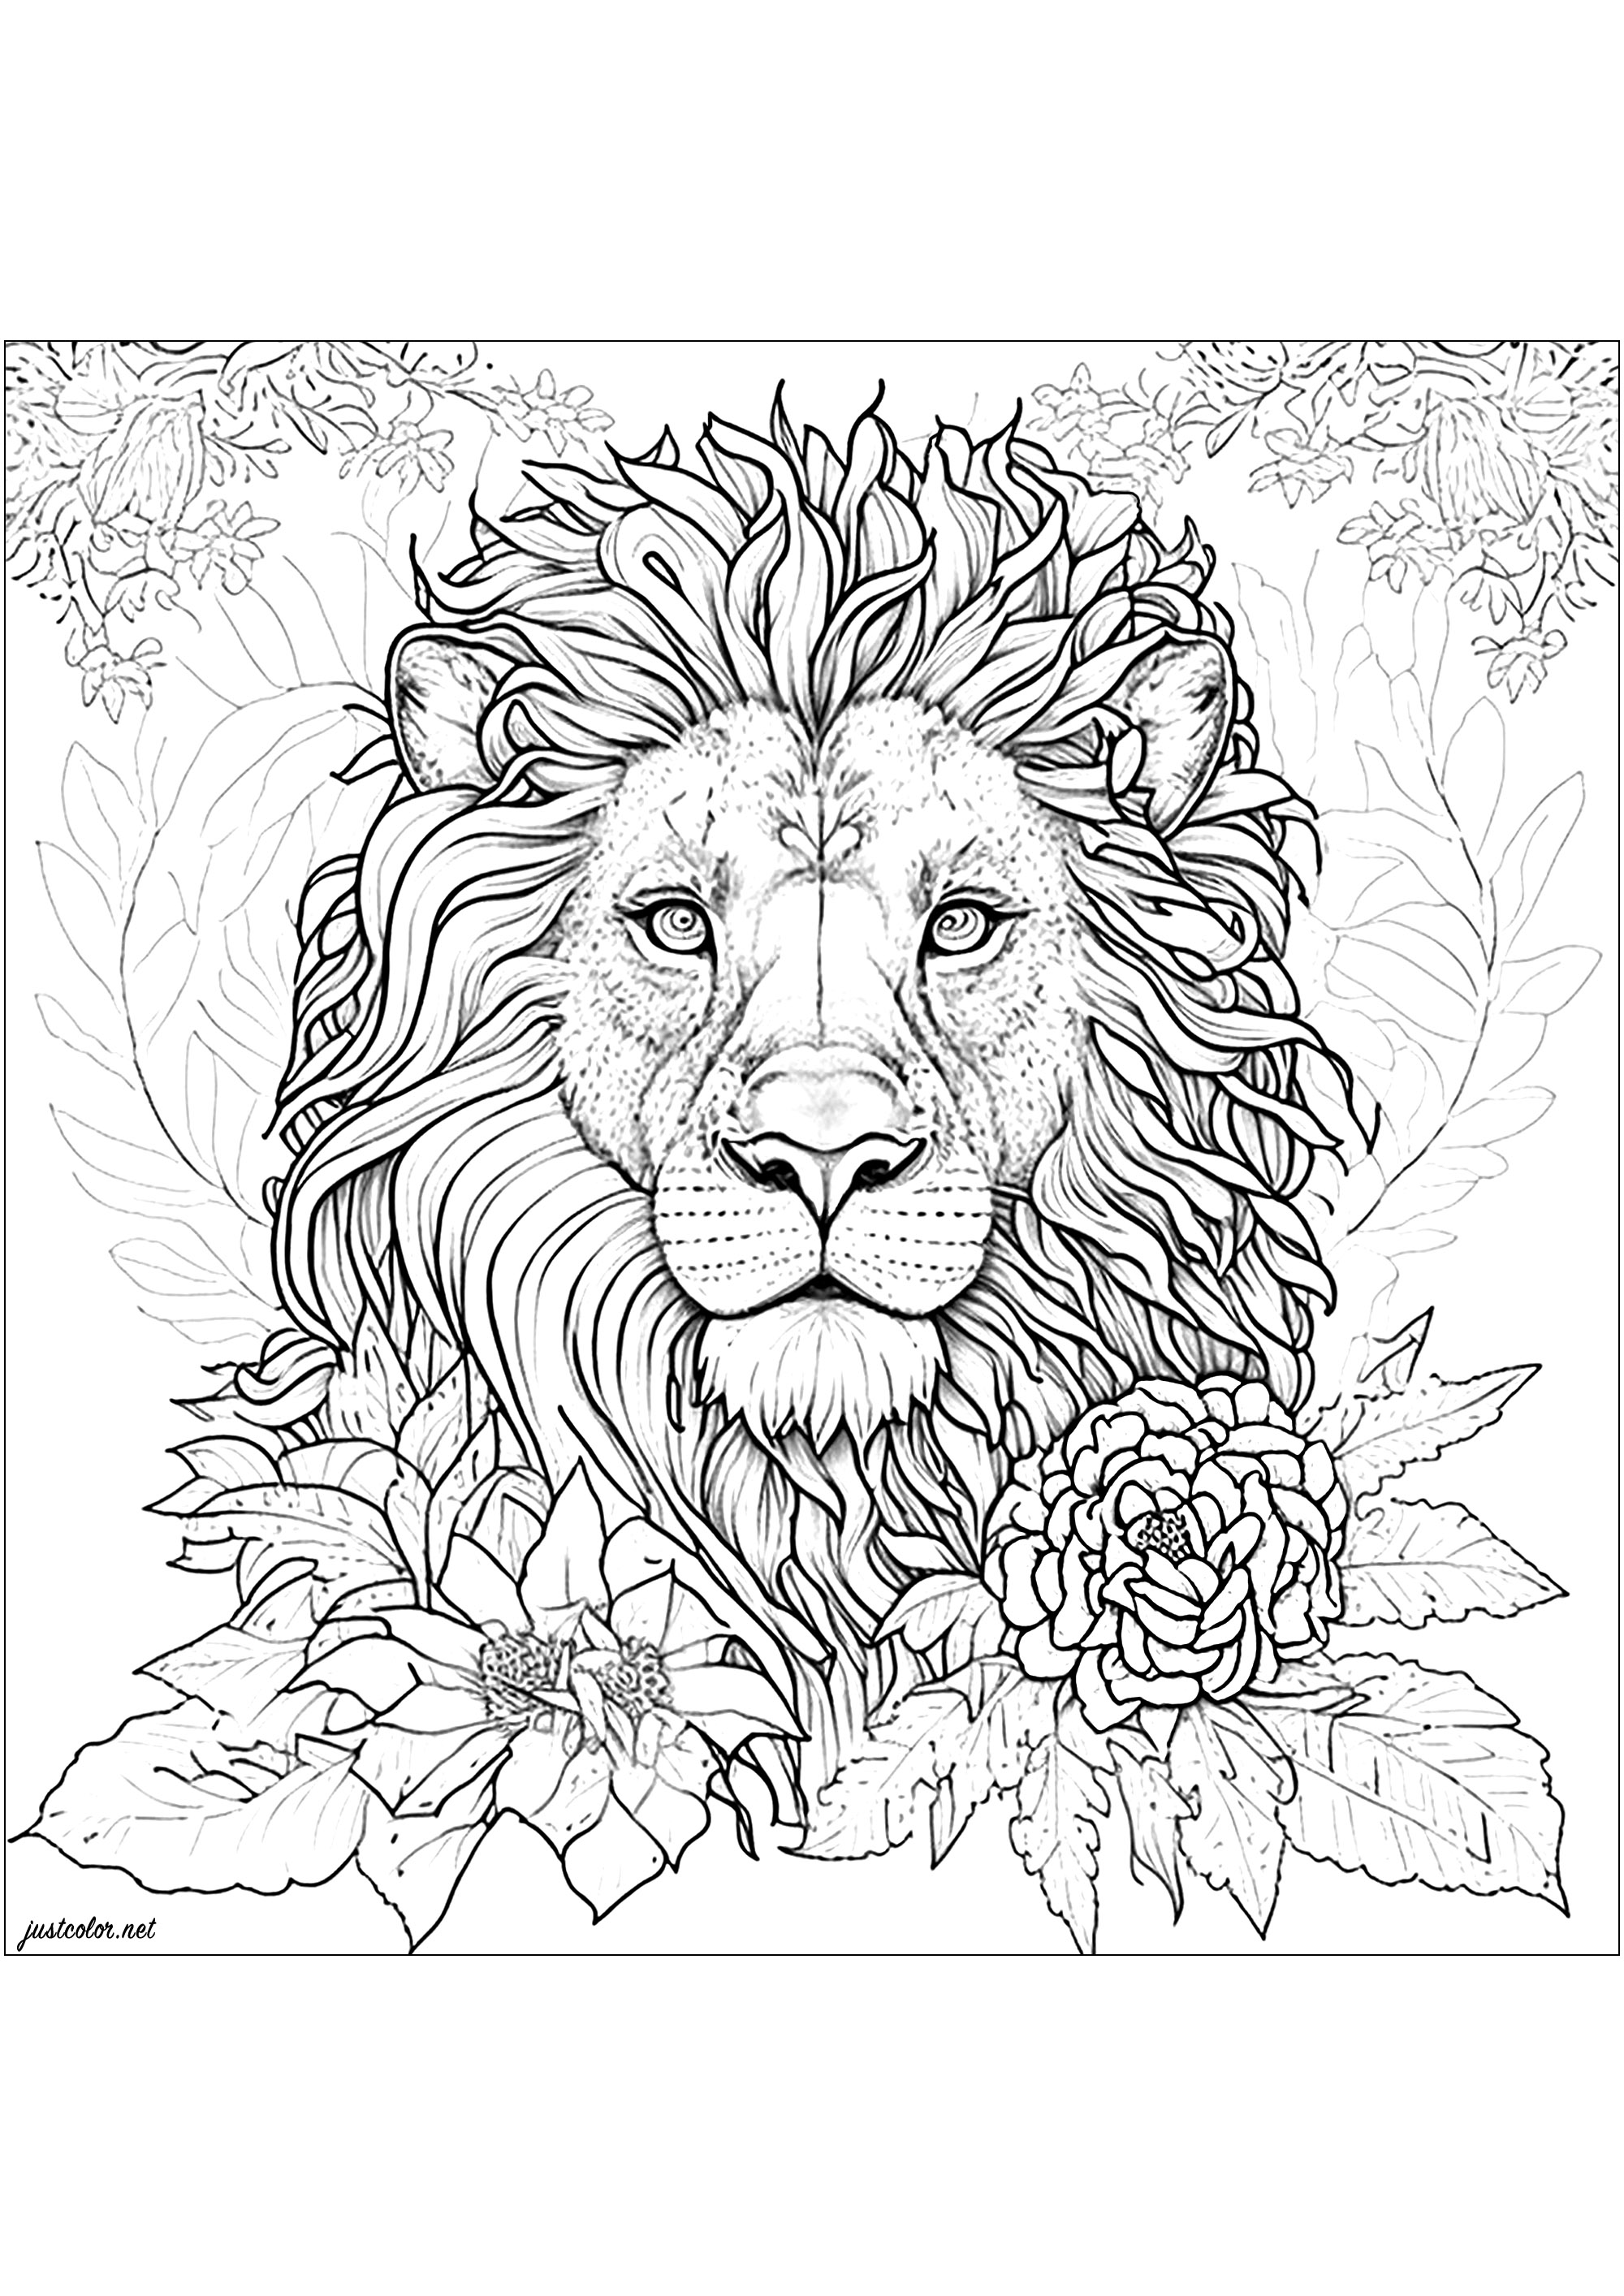 Coloração de um leão rodeado de belas flores. Este desenho do leão é ultra realista e detalhado! Leve o seu tempo a colorir cada parte da sua bela juba, e toda a vegetação que o rodeia.